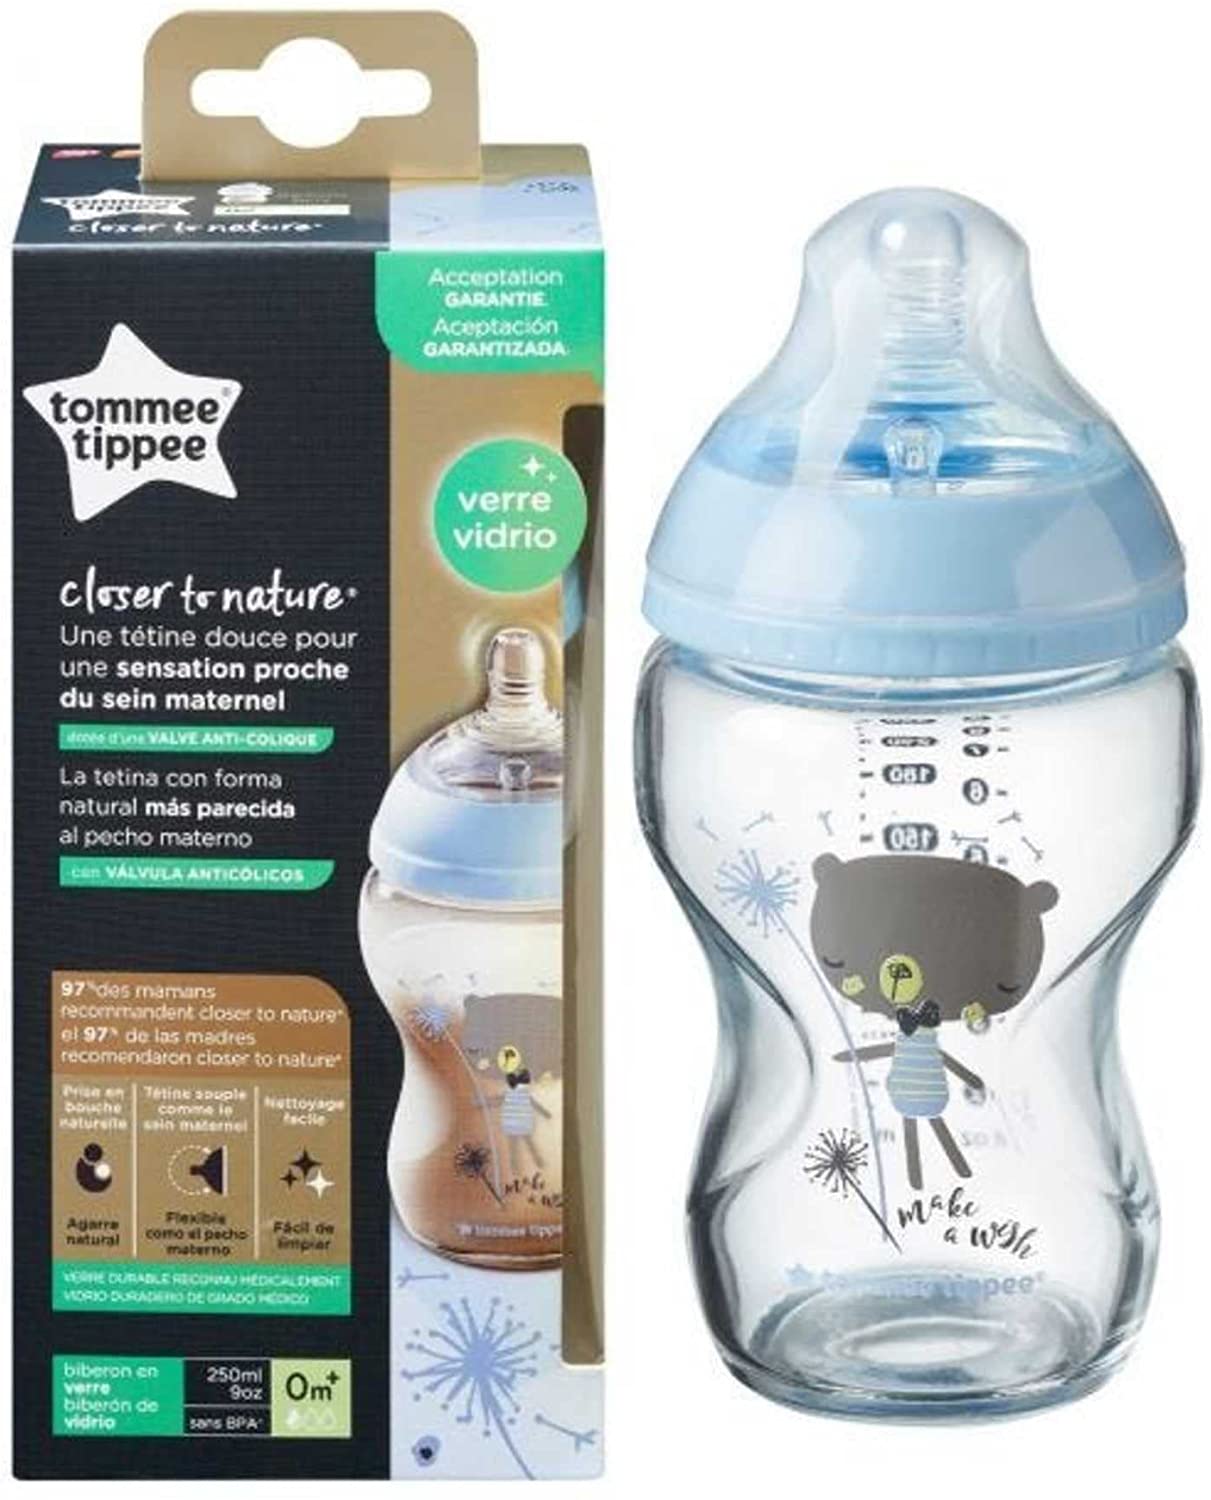 Biberon en verre isotherme pour bébé, coton bio, rouge à petit pois, 250ml,  Emil achat vente écologique - Acheter sur